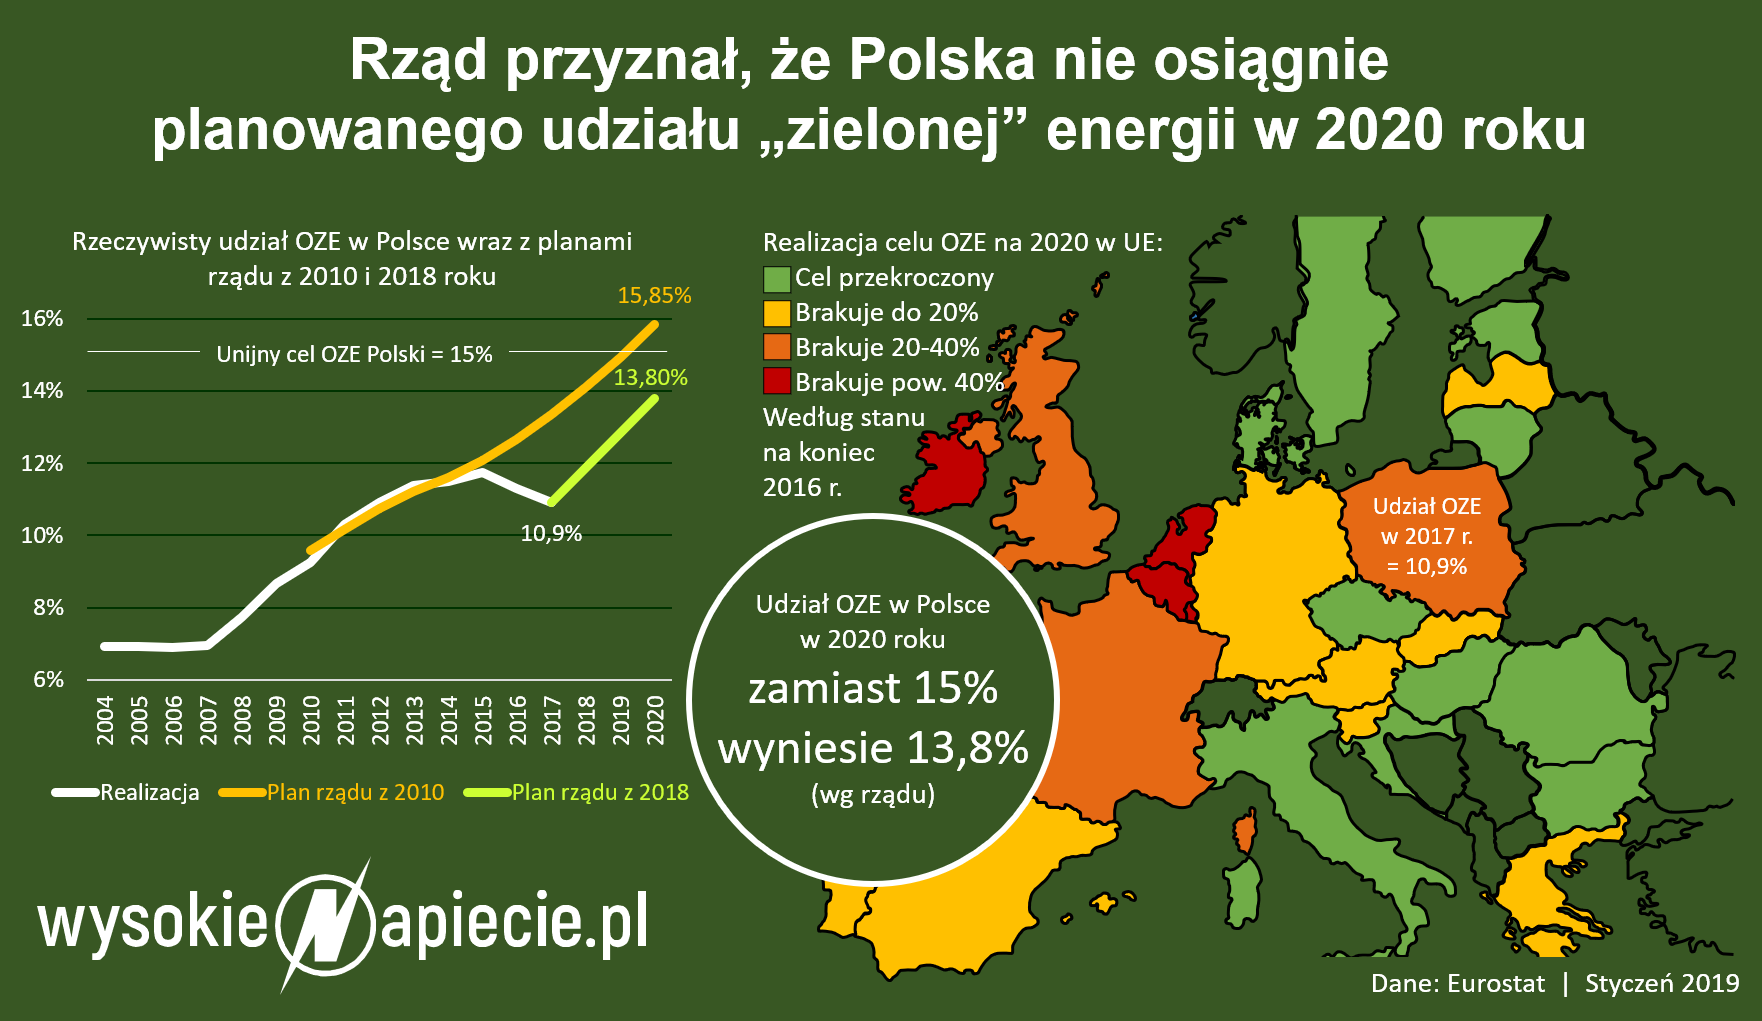 udzial oze w polsce 2020 2019